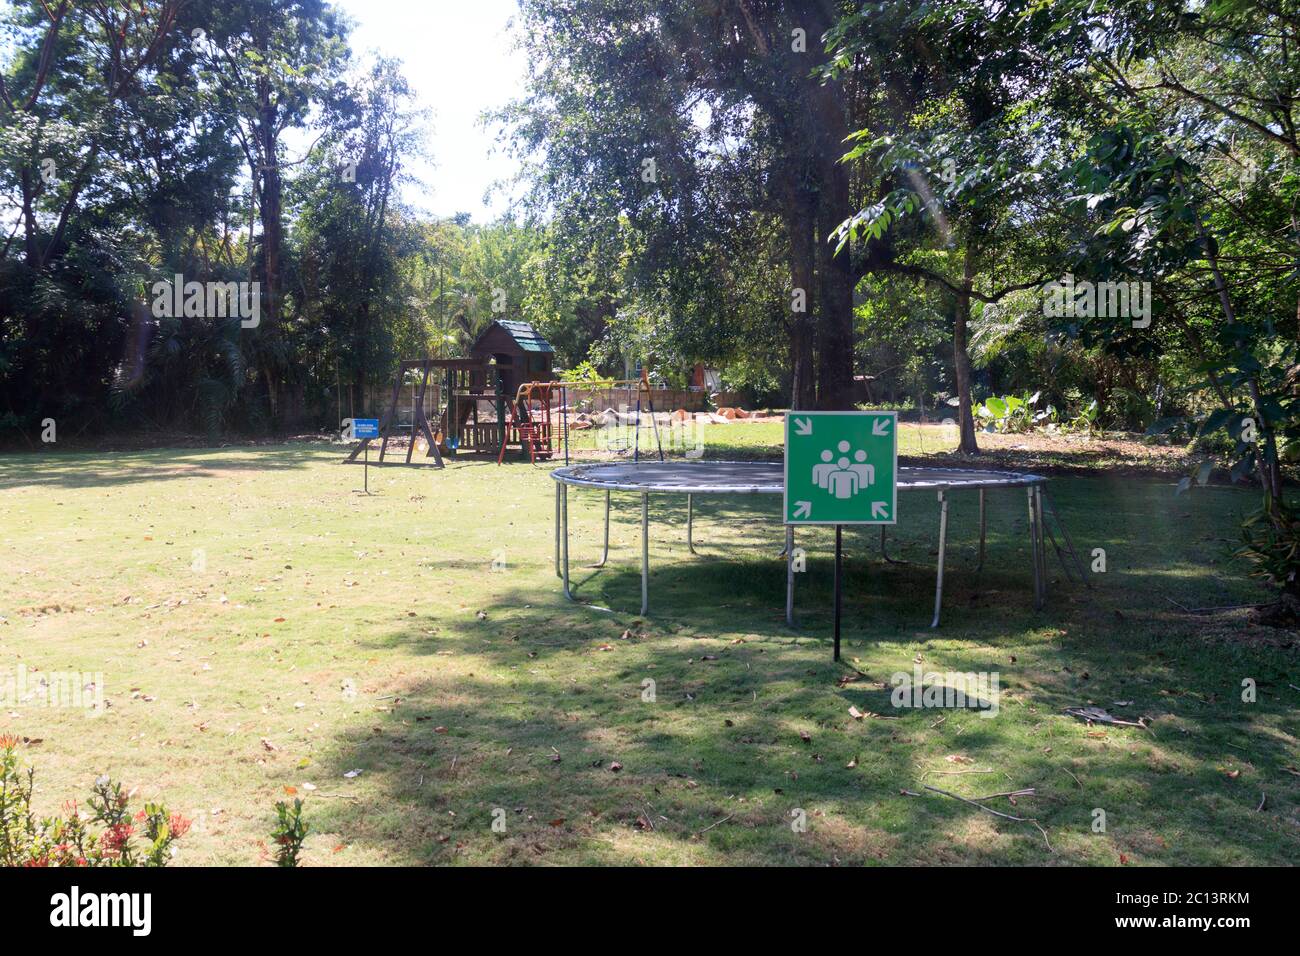 children's playground in green nature Stock Photo